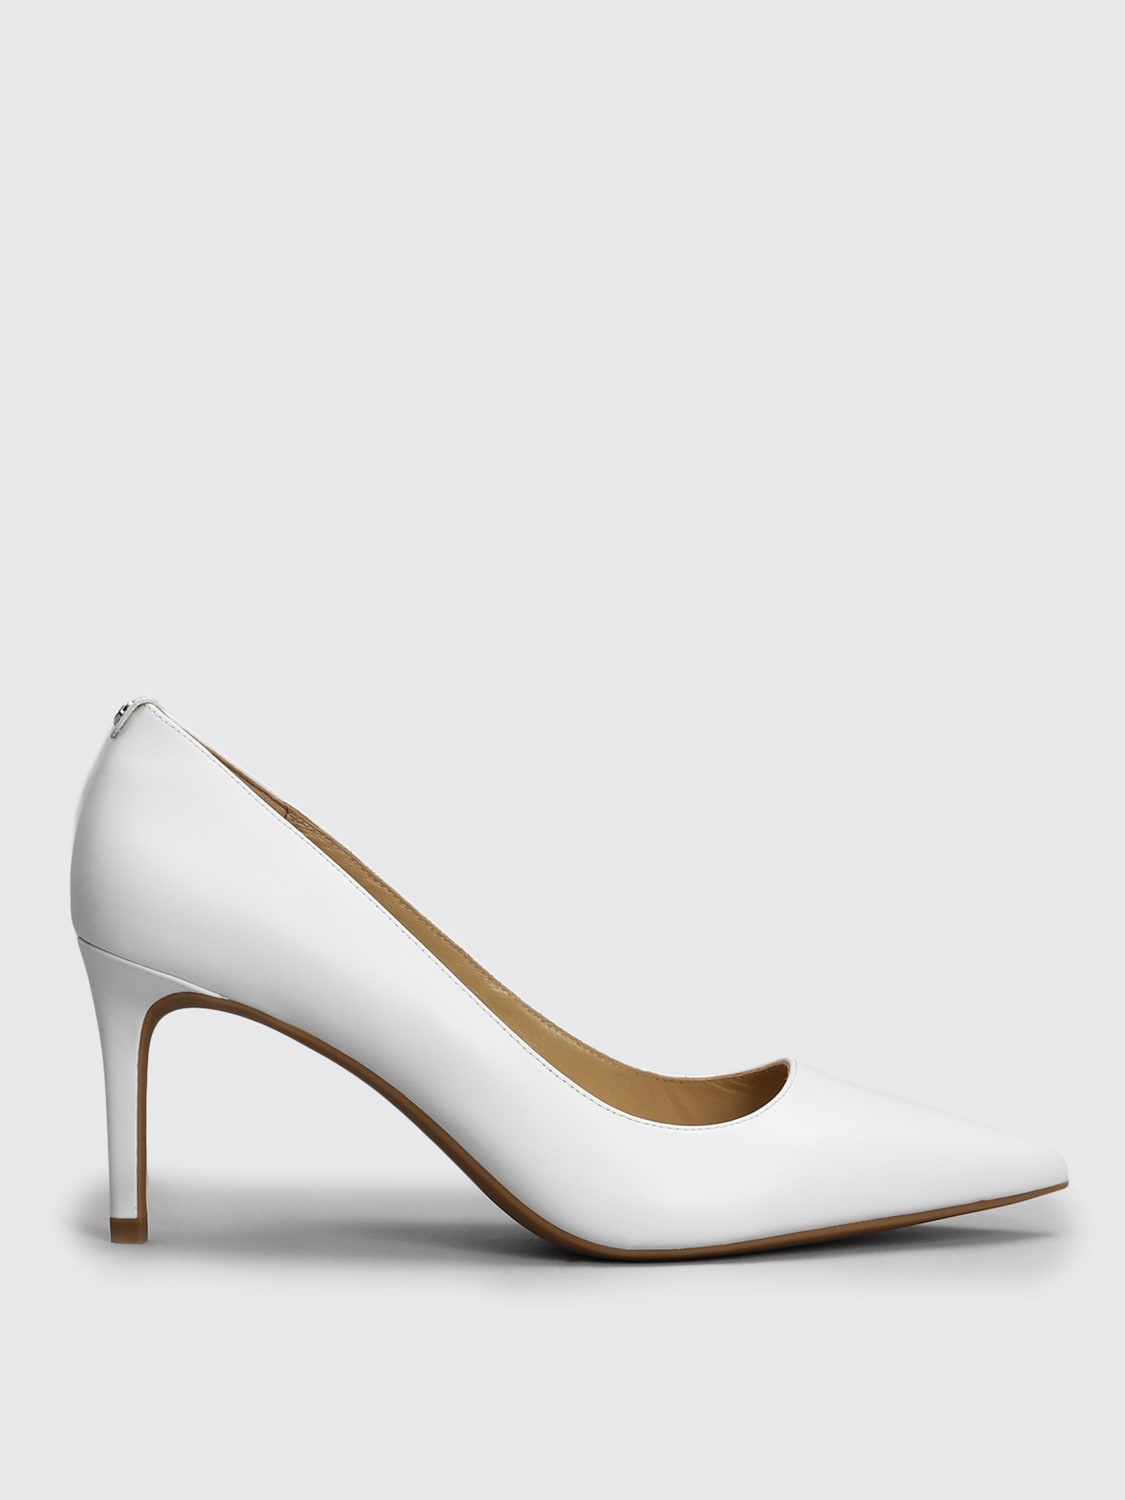 MICHAEL KORS: Zapatos de para mujer, Blanco Zapatos De SalÓN Michael 40F2HNMP2L en línea en GIGLIO.COM